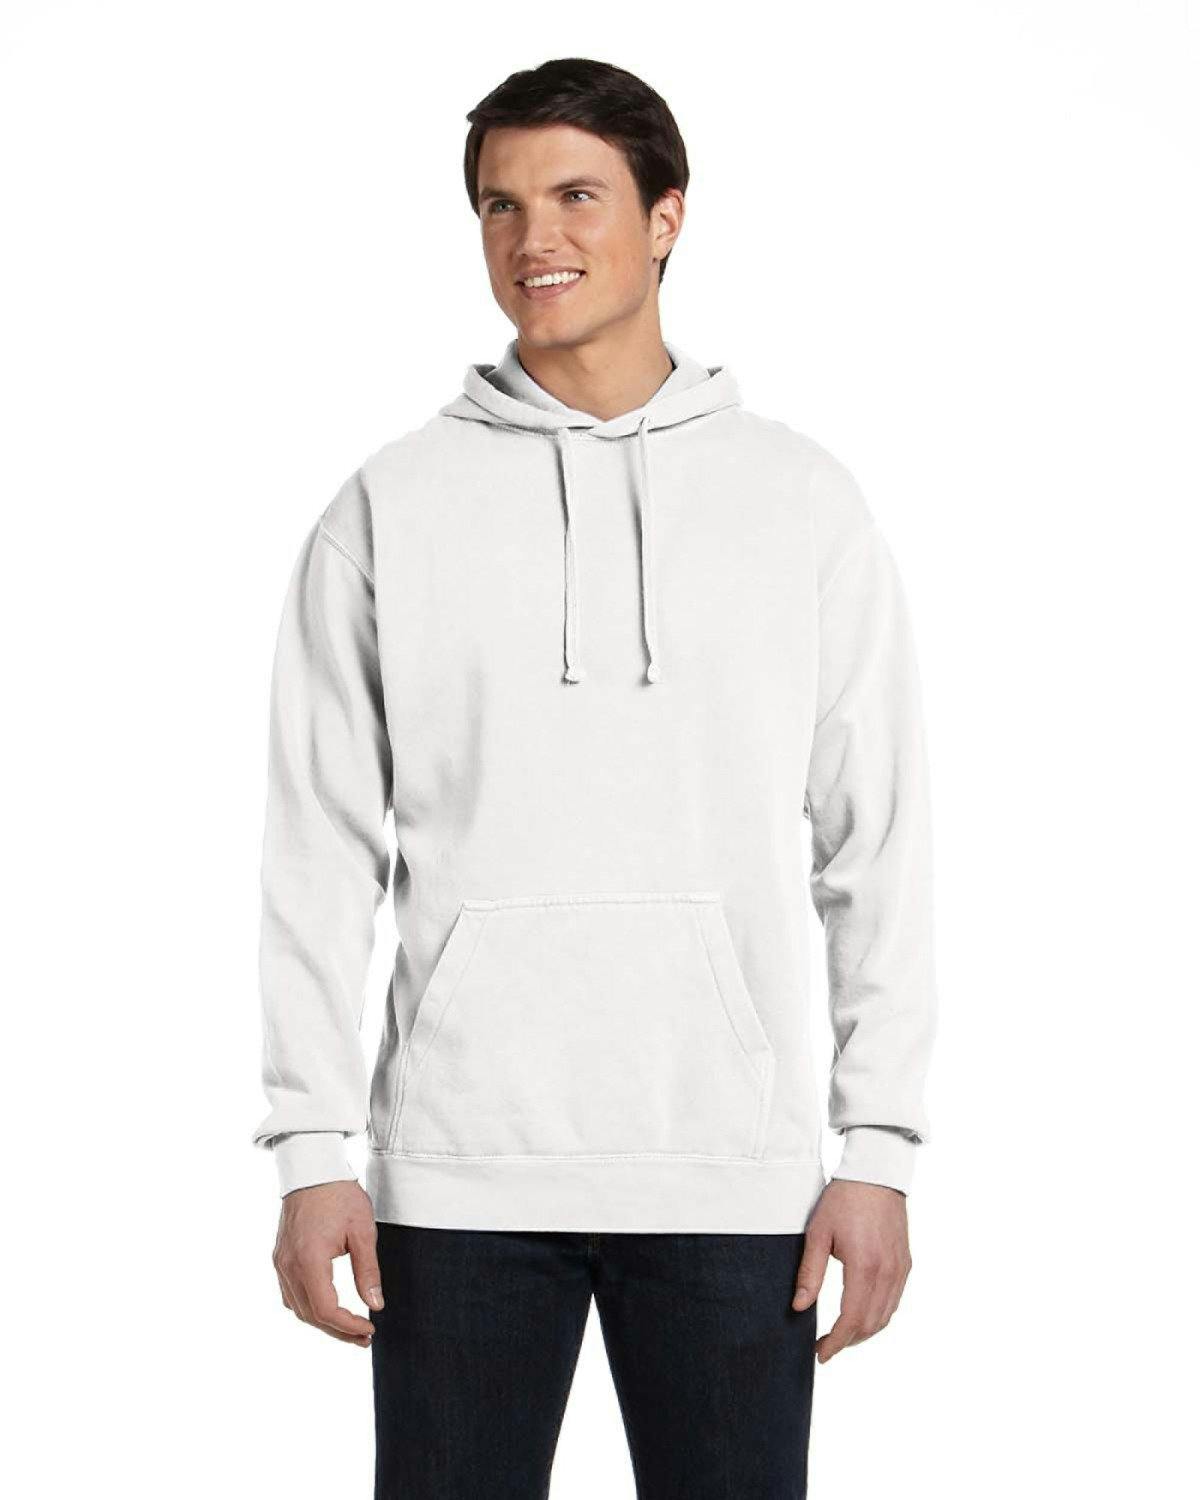 Image for Adult Hooded Sweatshirt